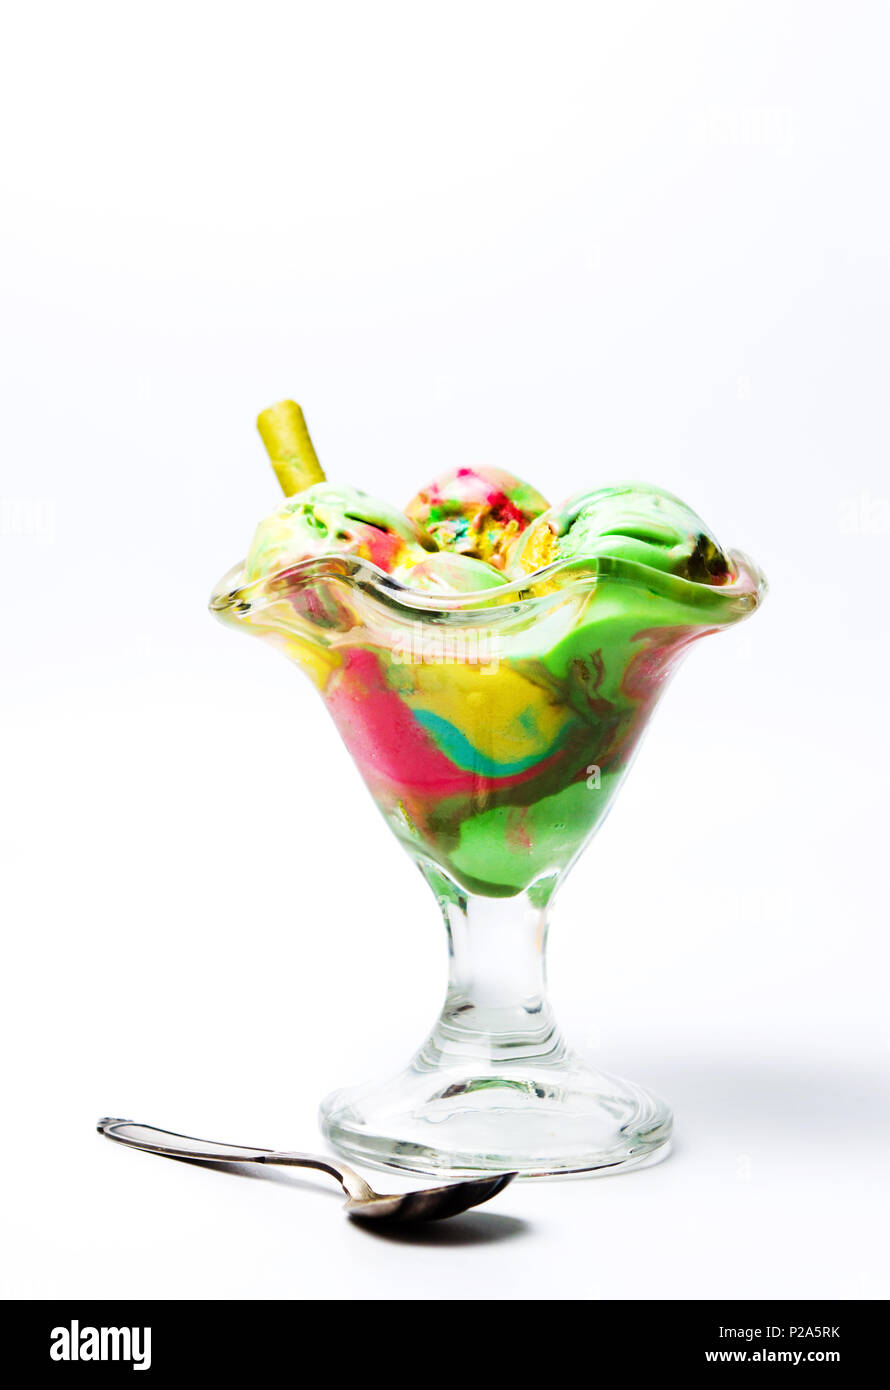 Le thé vert et de fruits mélangés dans une tasse de crème glacée Banque D'Images